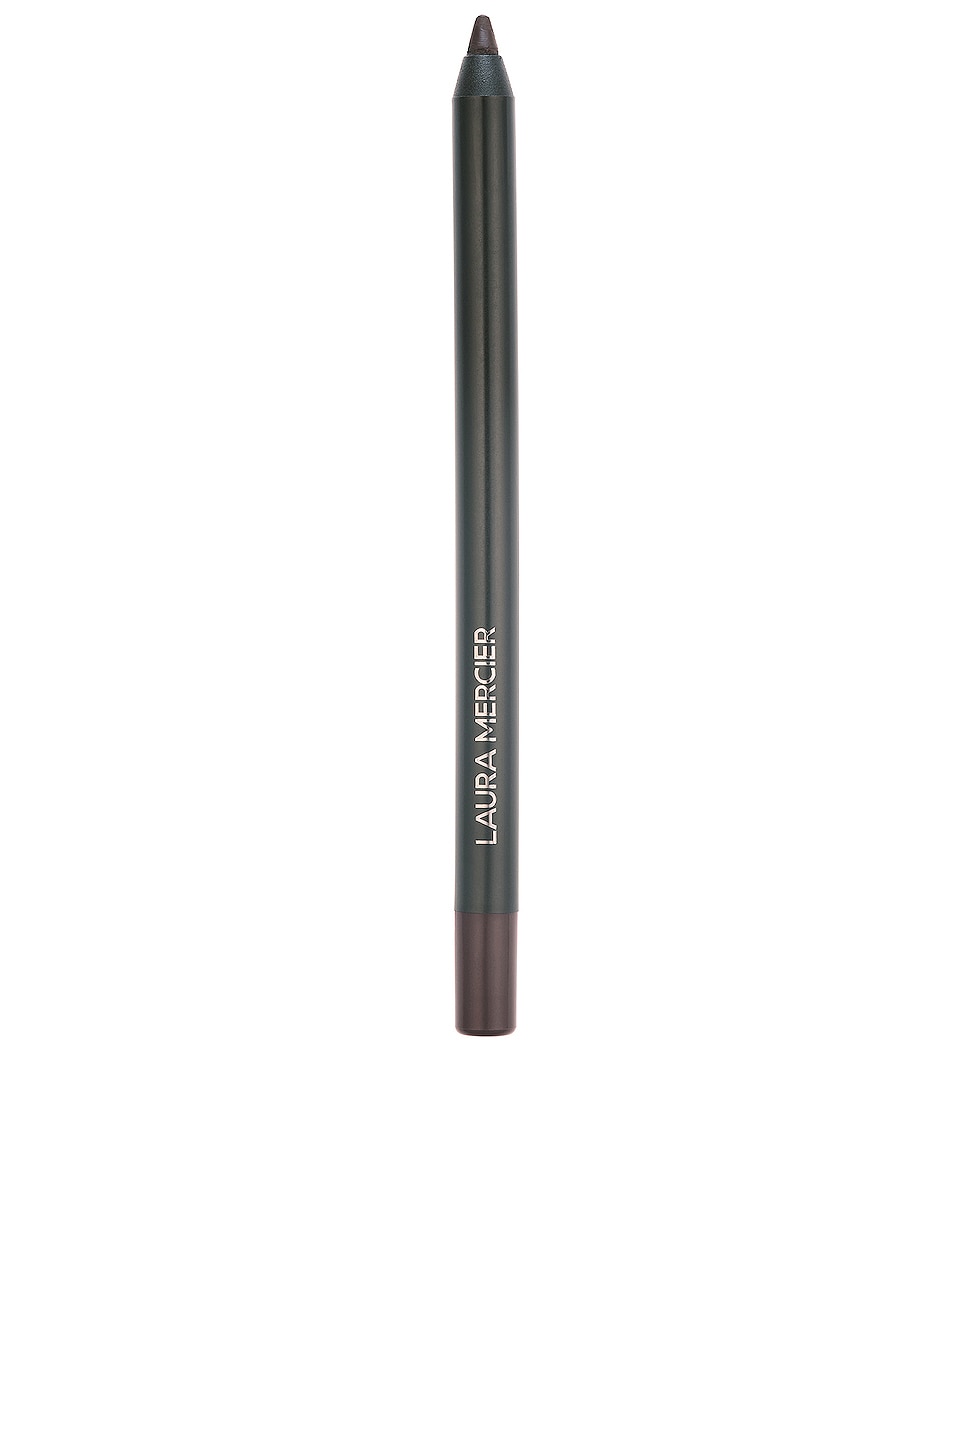 Caviar Tightline Eyeliner Pencil in Brown